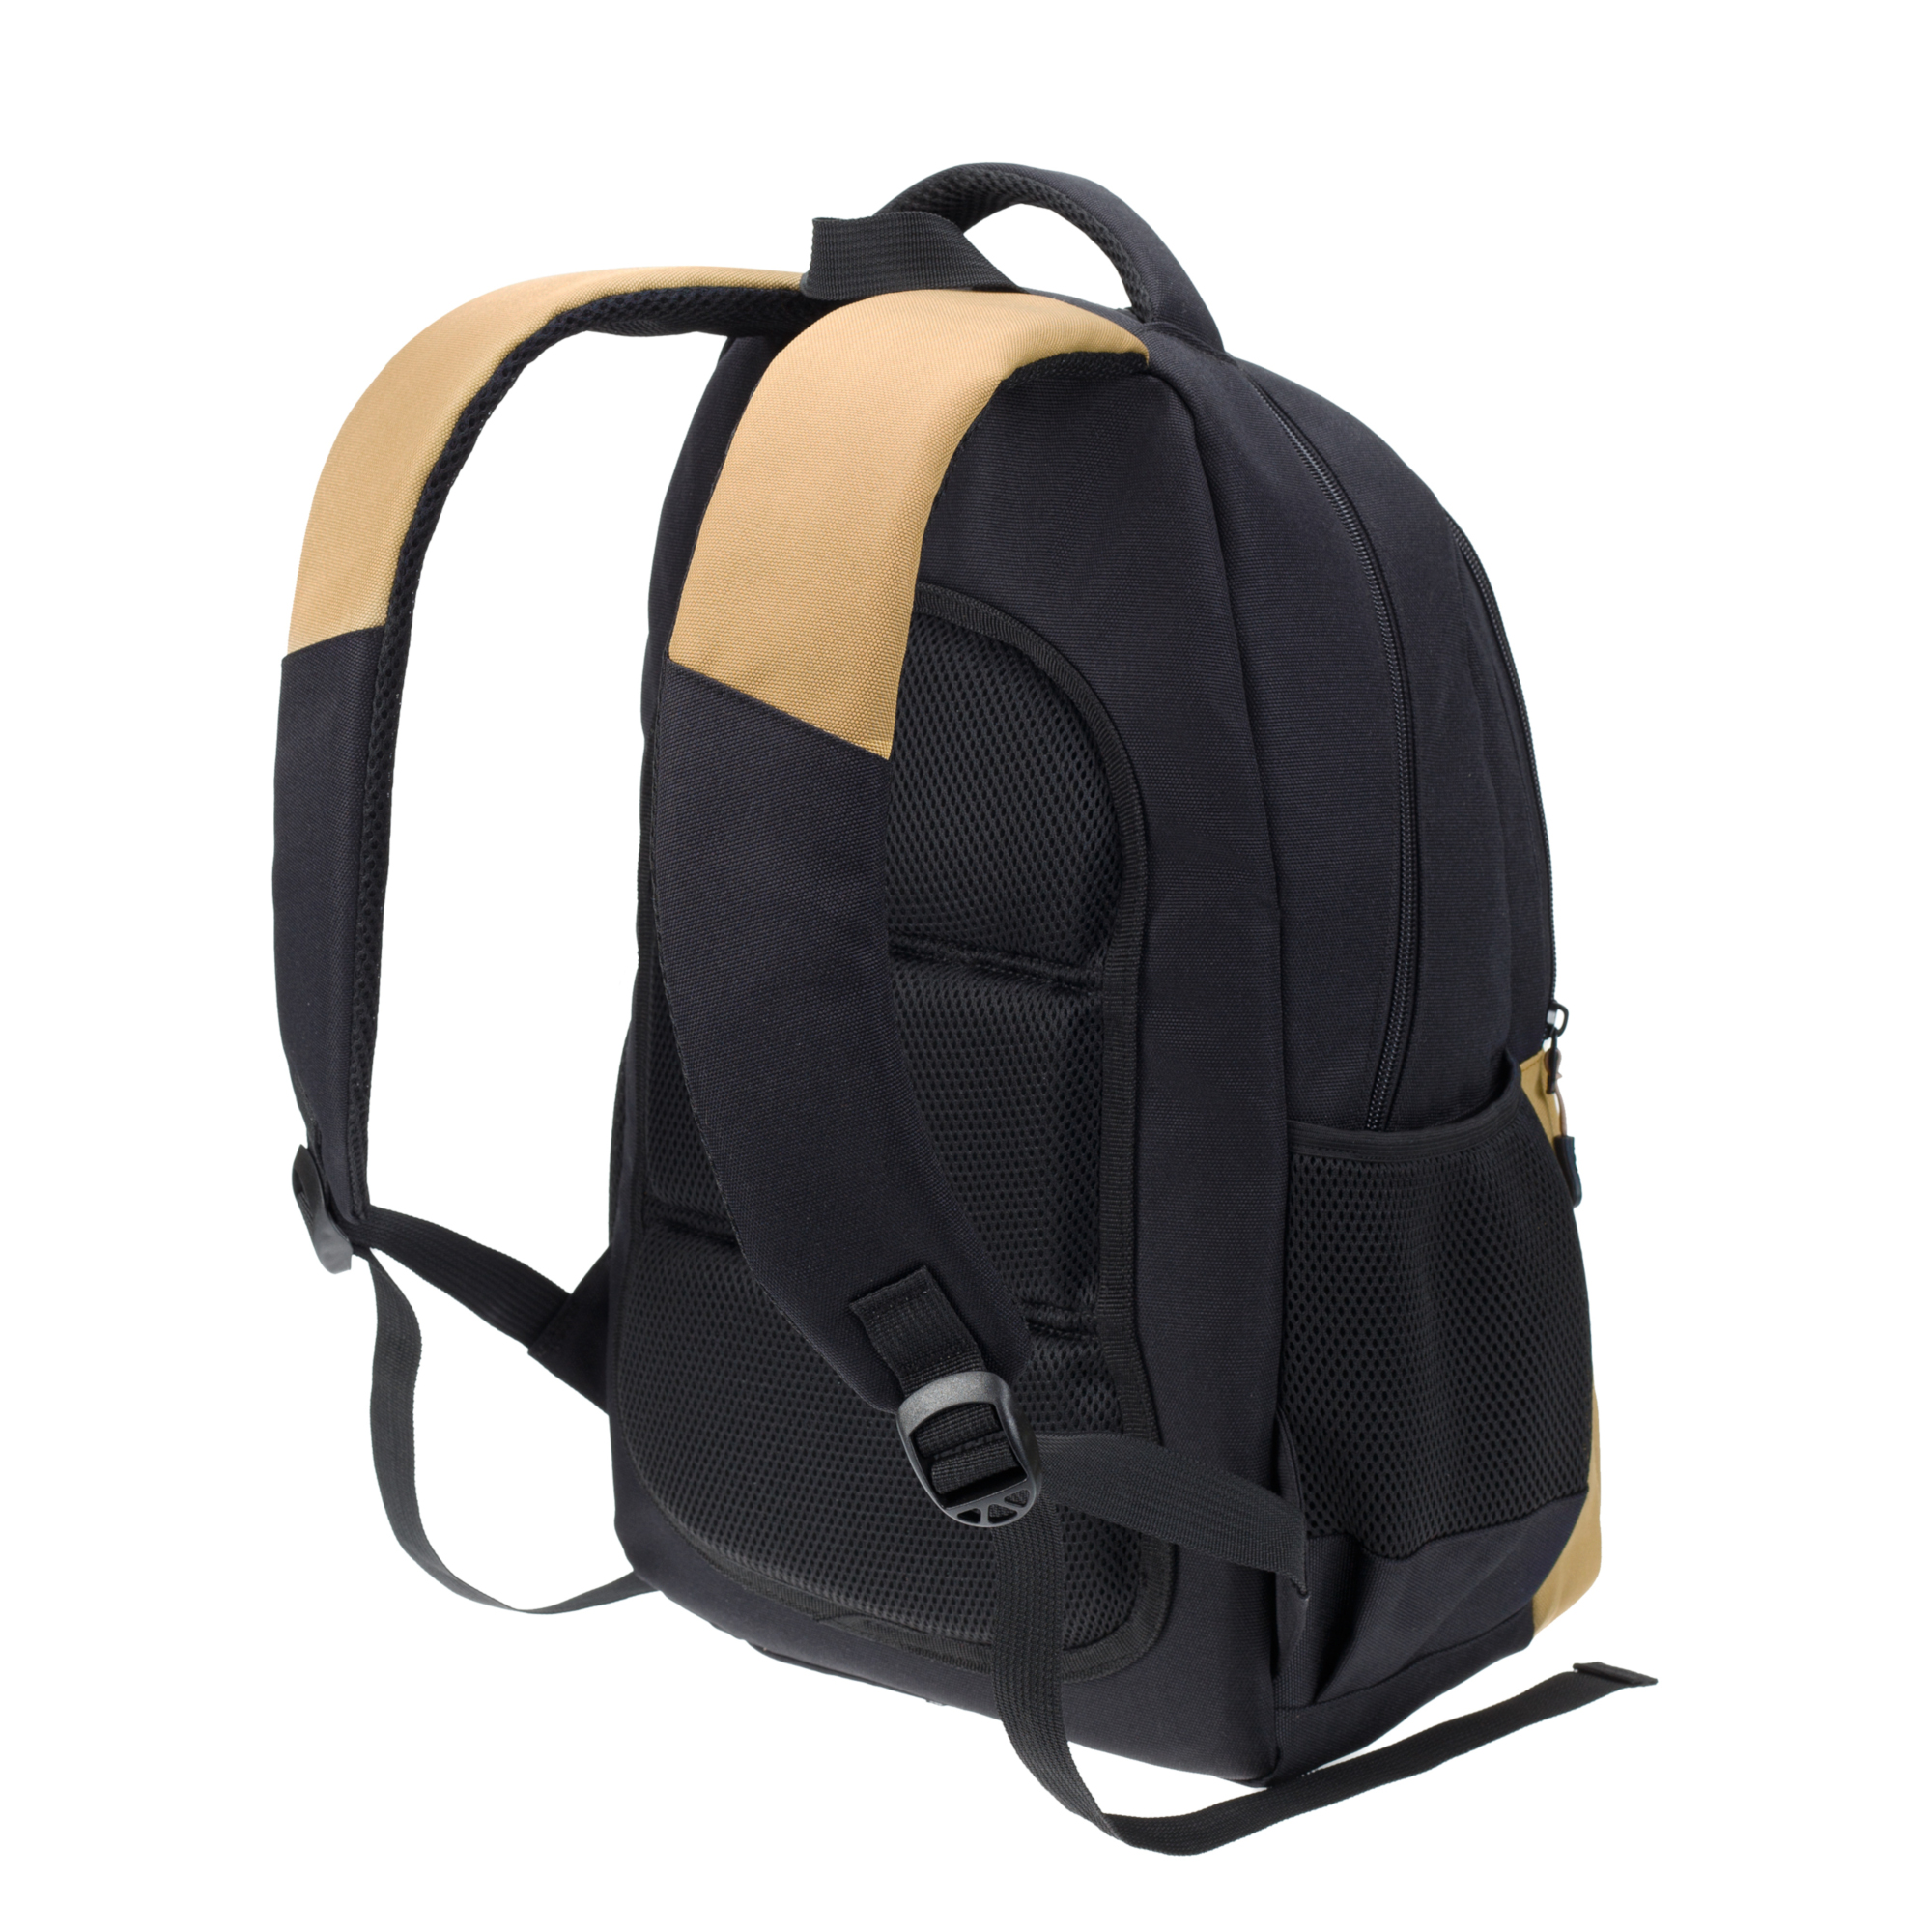 Рюкзак TORBER CLASS X черно-бежевый и мешок для сменной обуви в подарок - фото 4